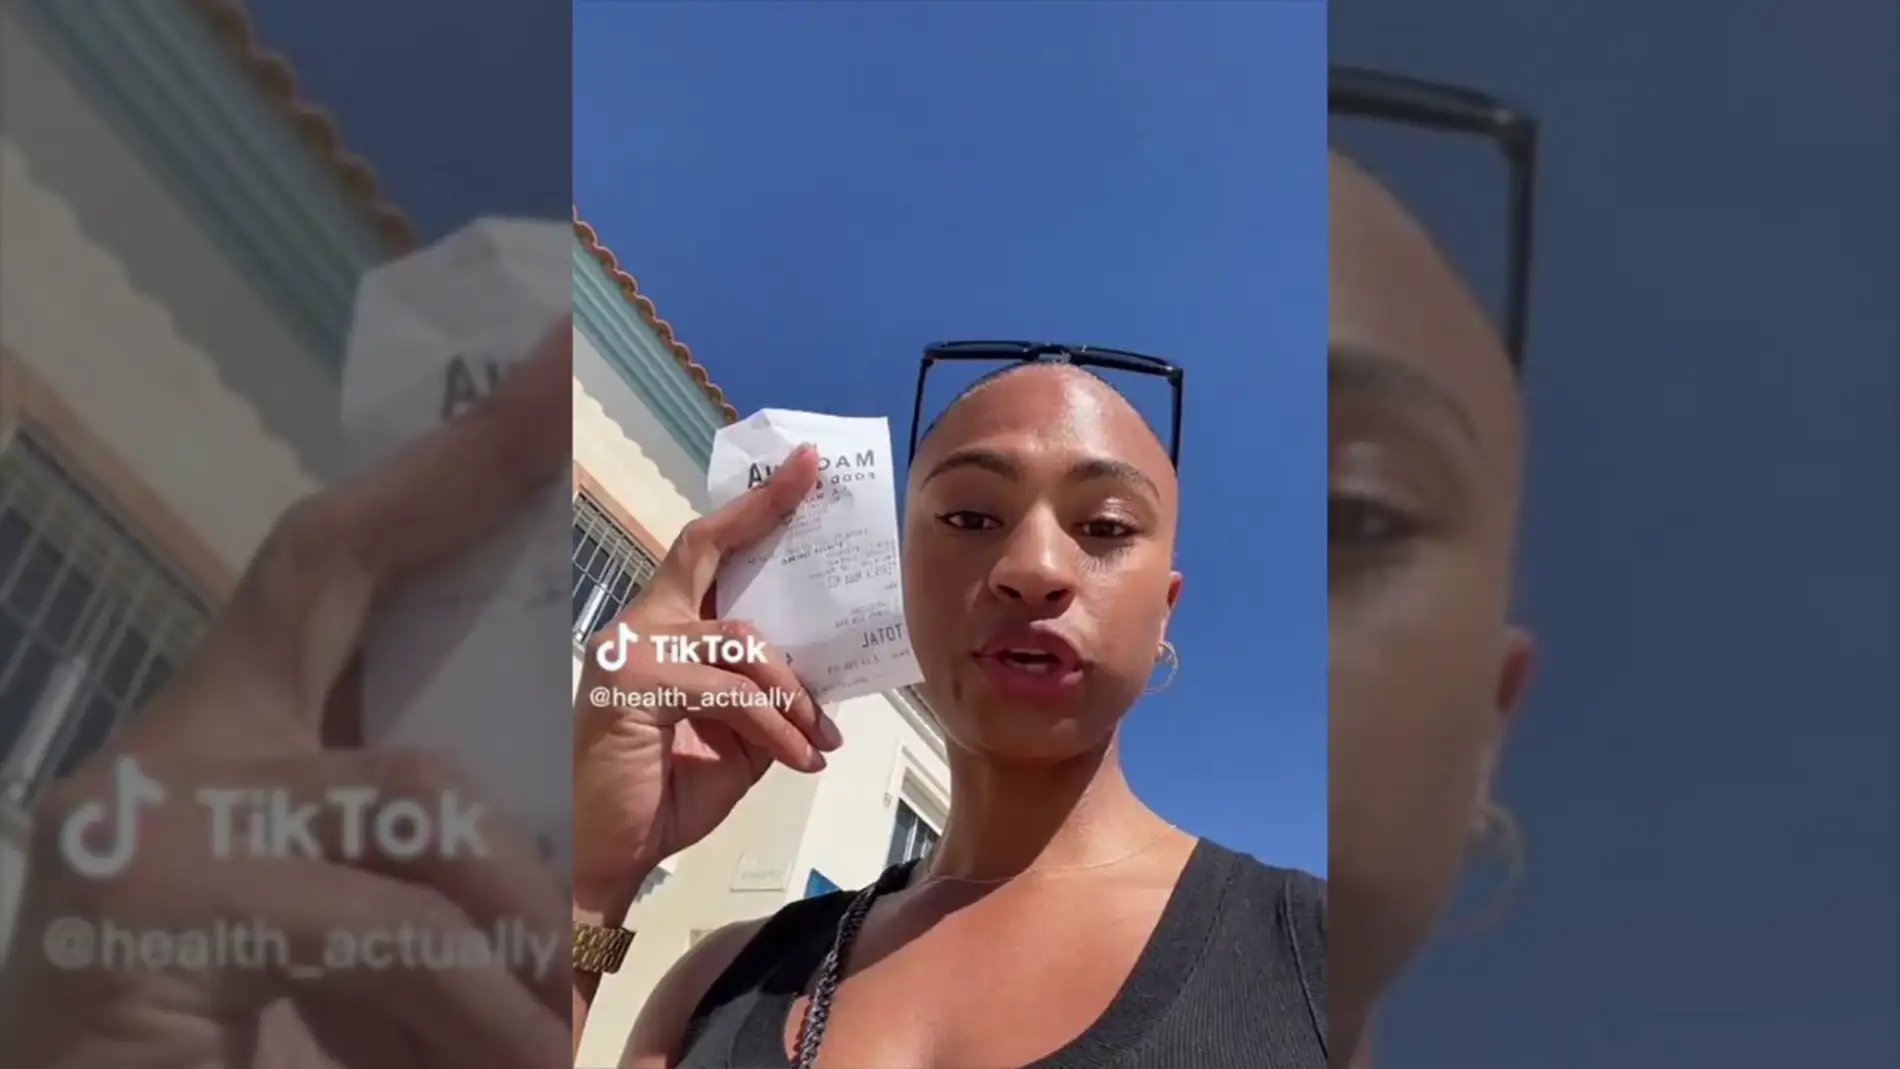 Una joven de EE.UU se muda a Málaga y se hace viral en TikTok por la original forma de mostrar que no se arrepiente del cambio